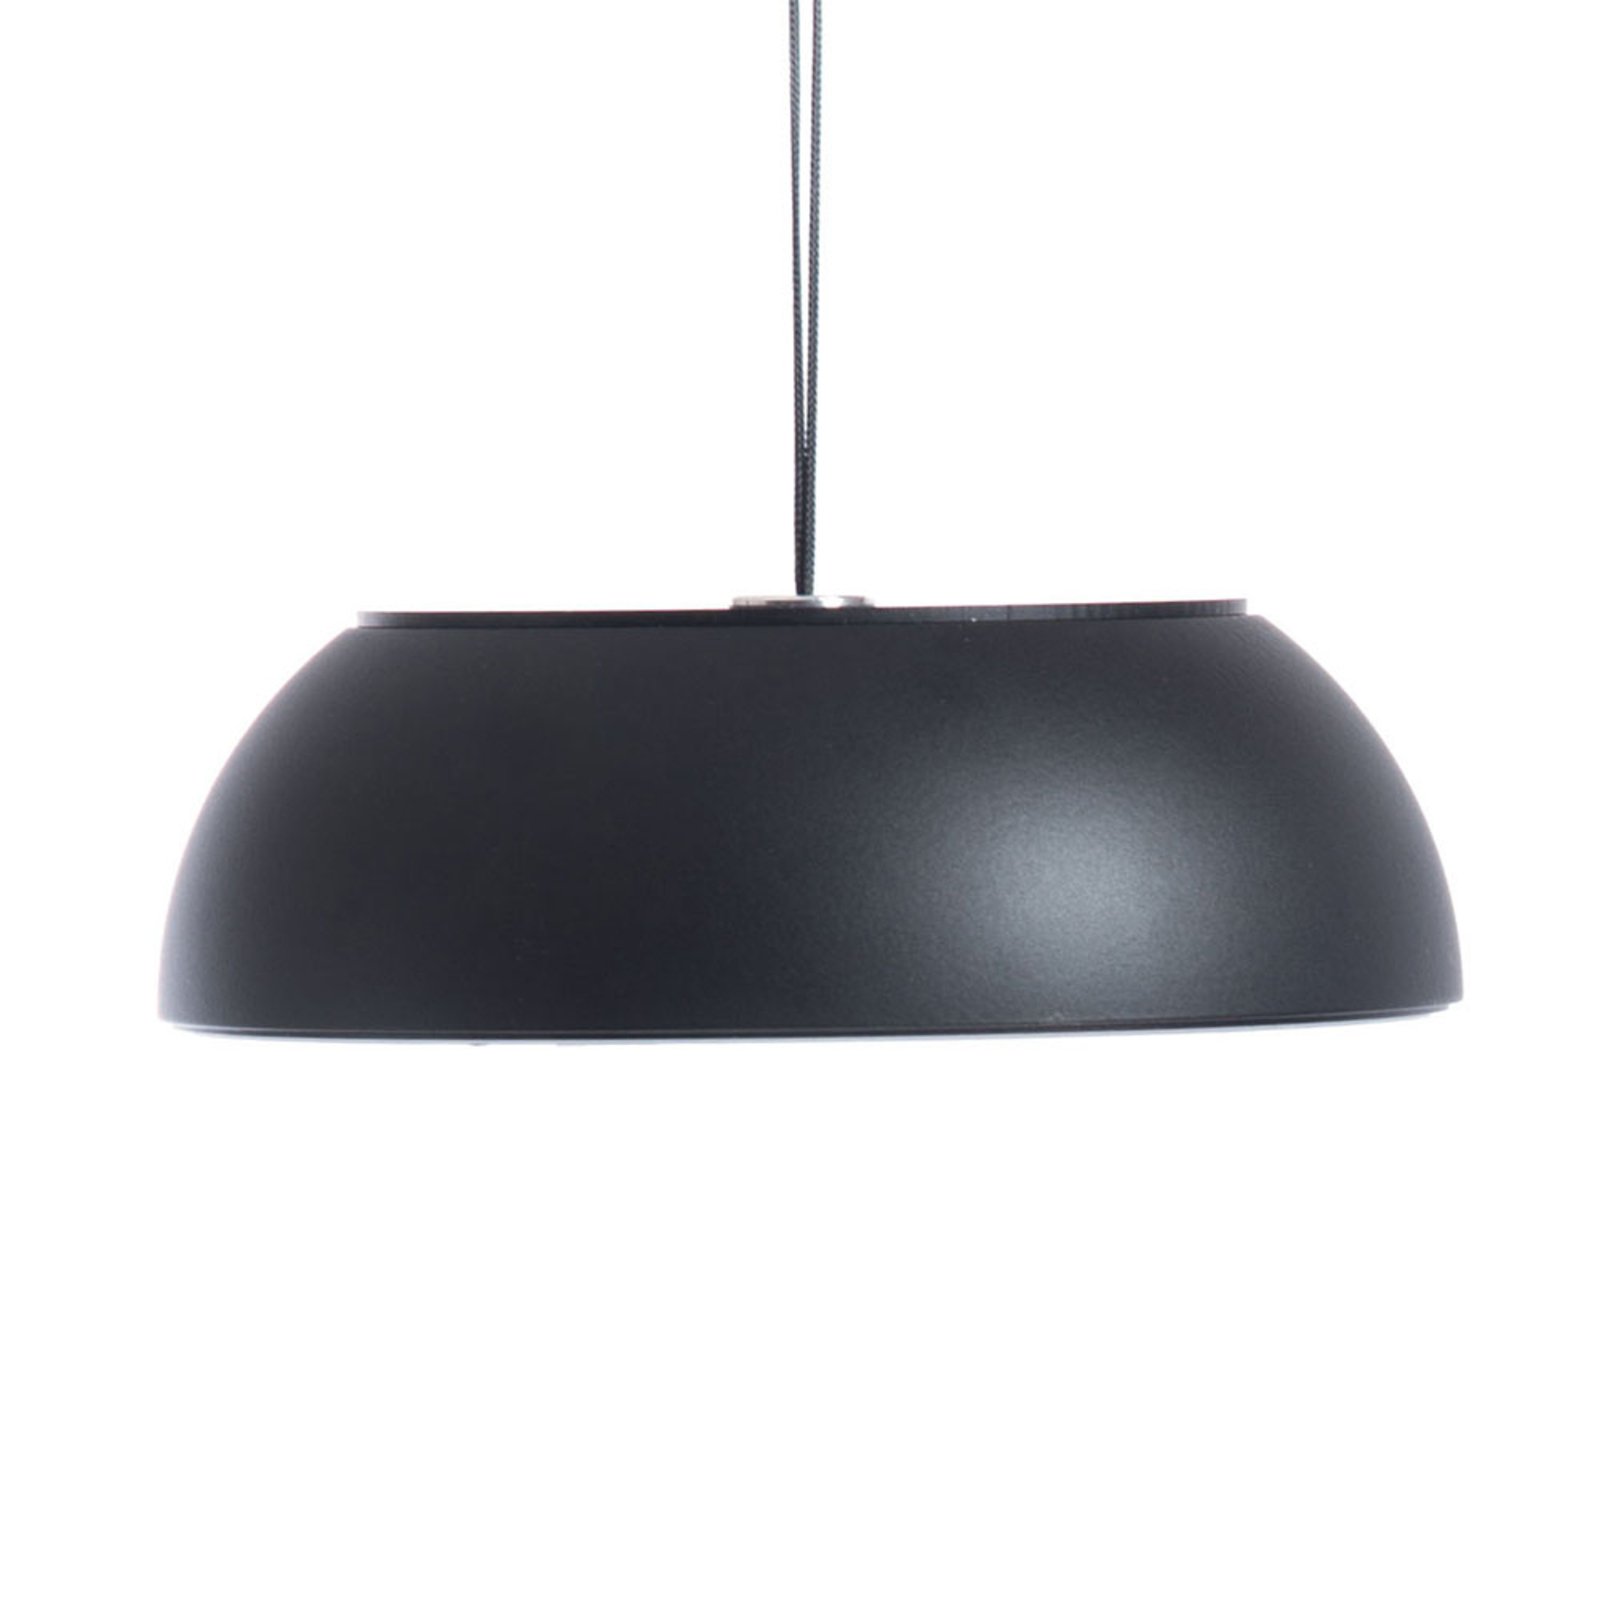 Axolight Float LED-es függőlámpa, fekete